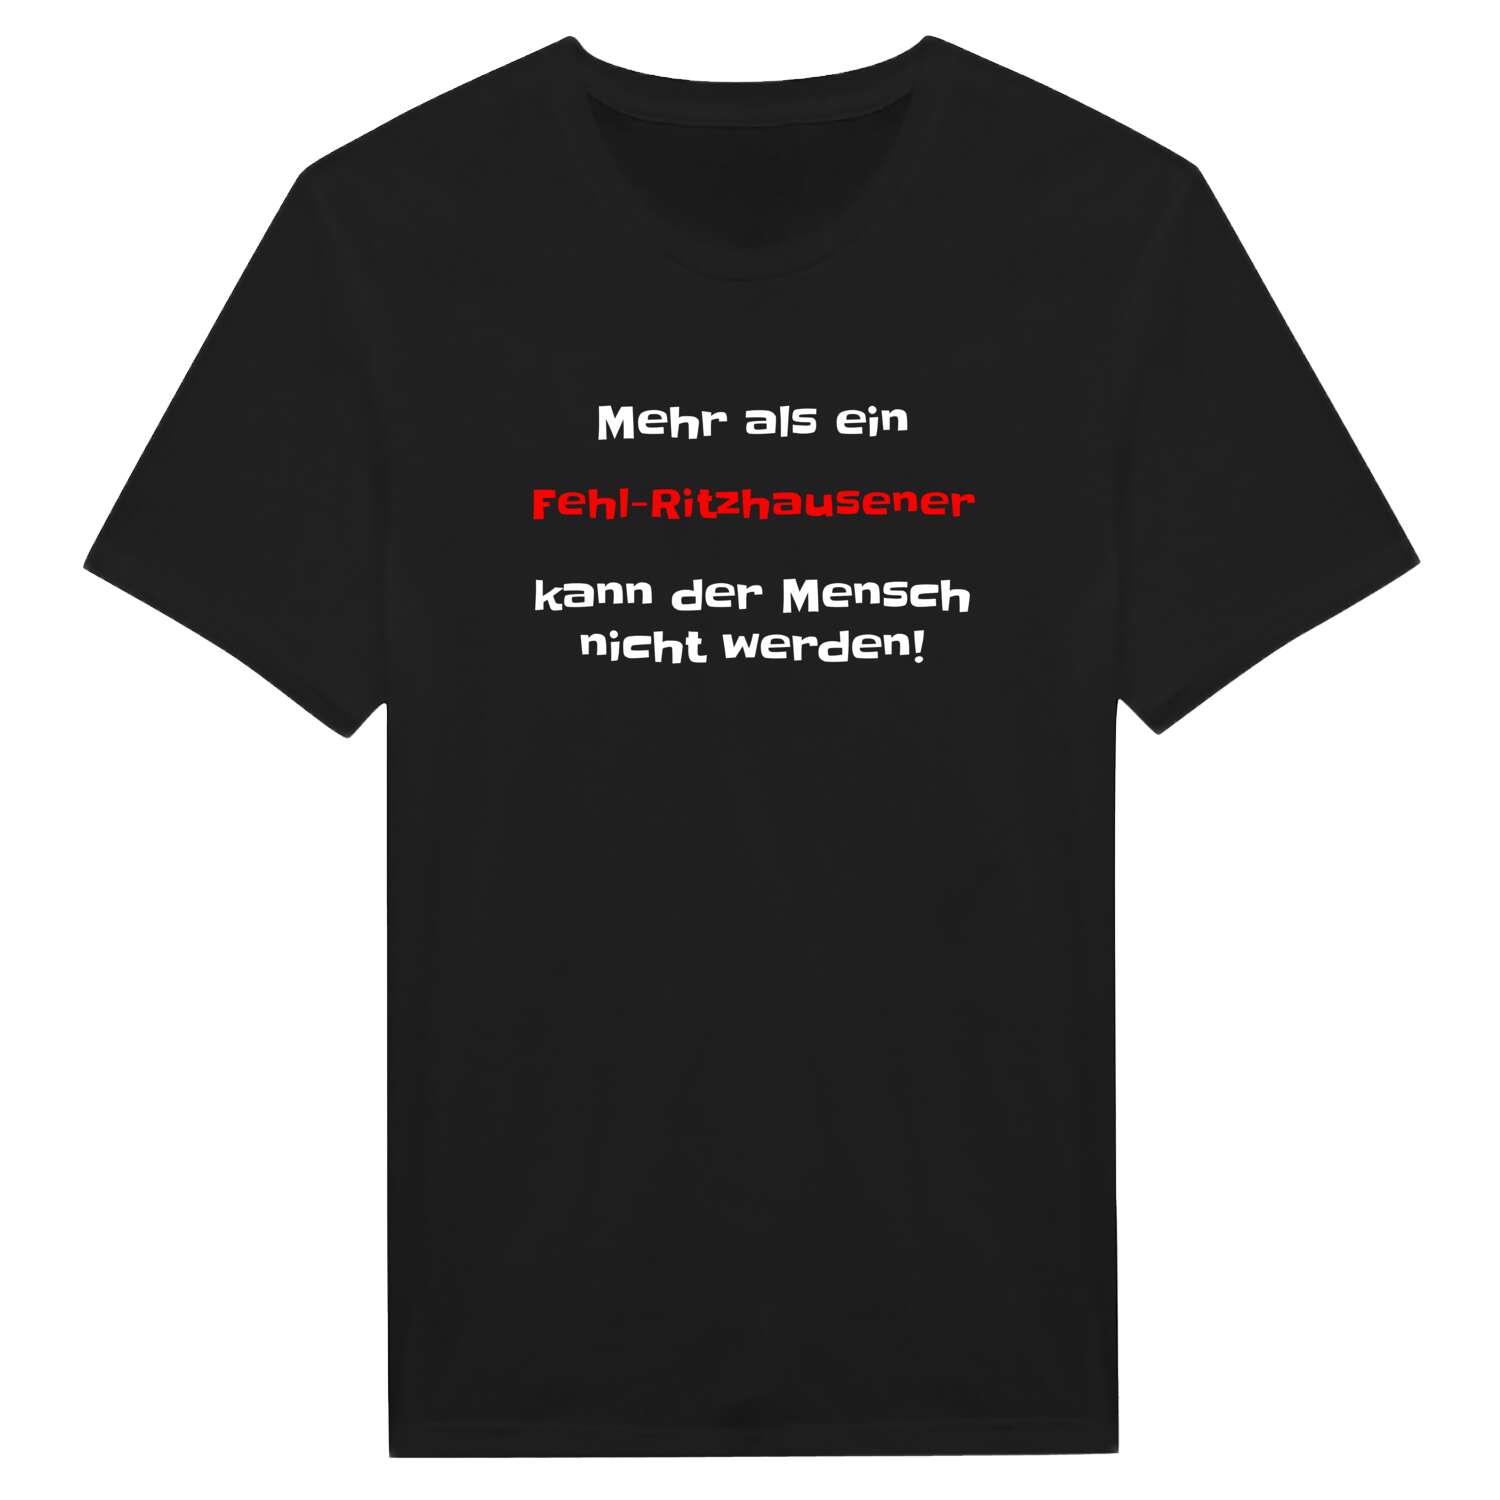 Fehl-Ritzhausen T-Shirt »Mehr als ein«